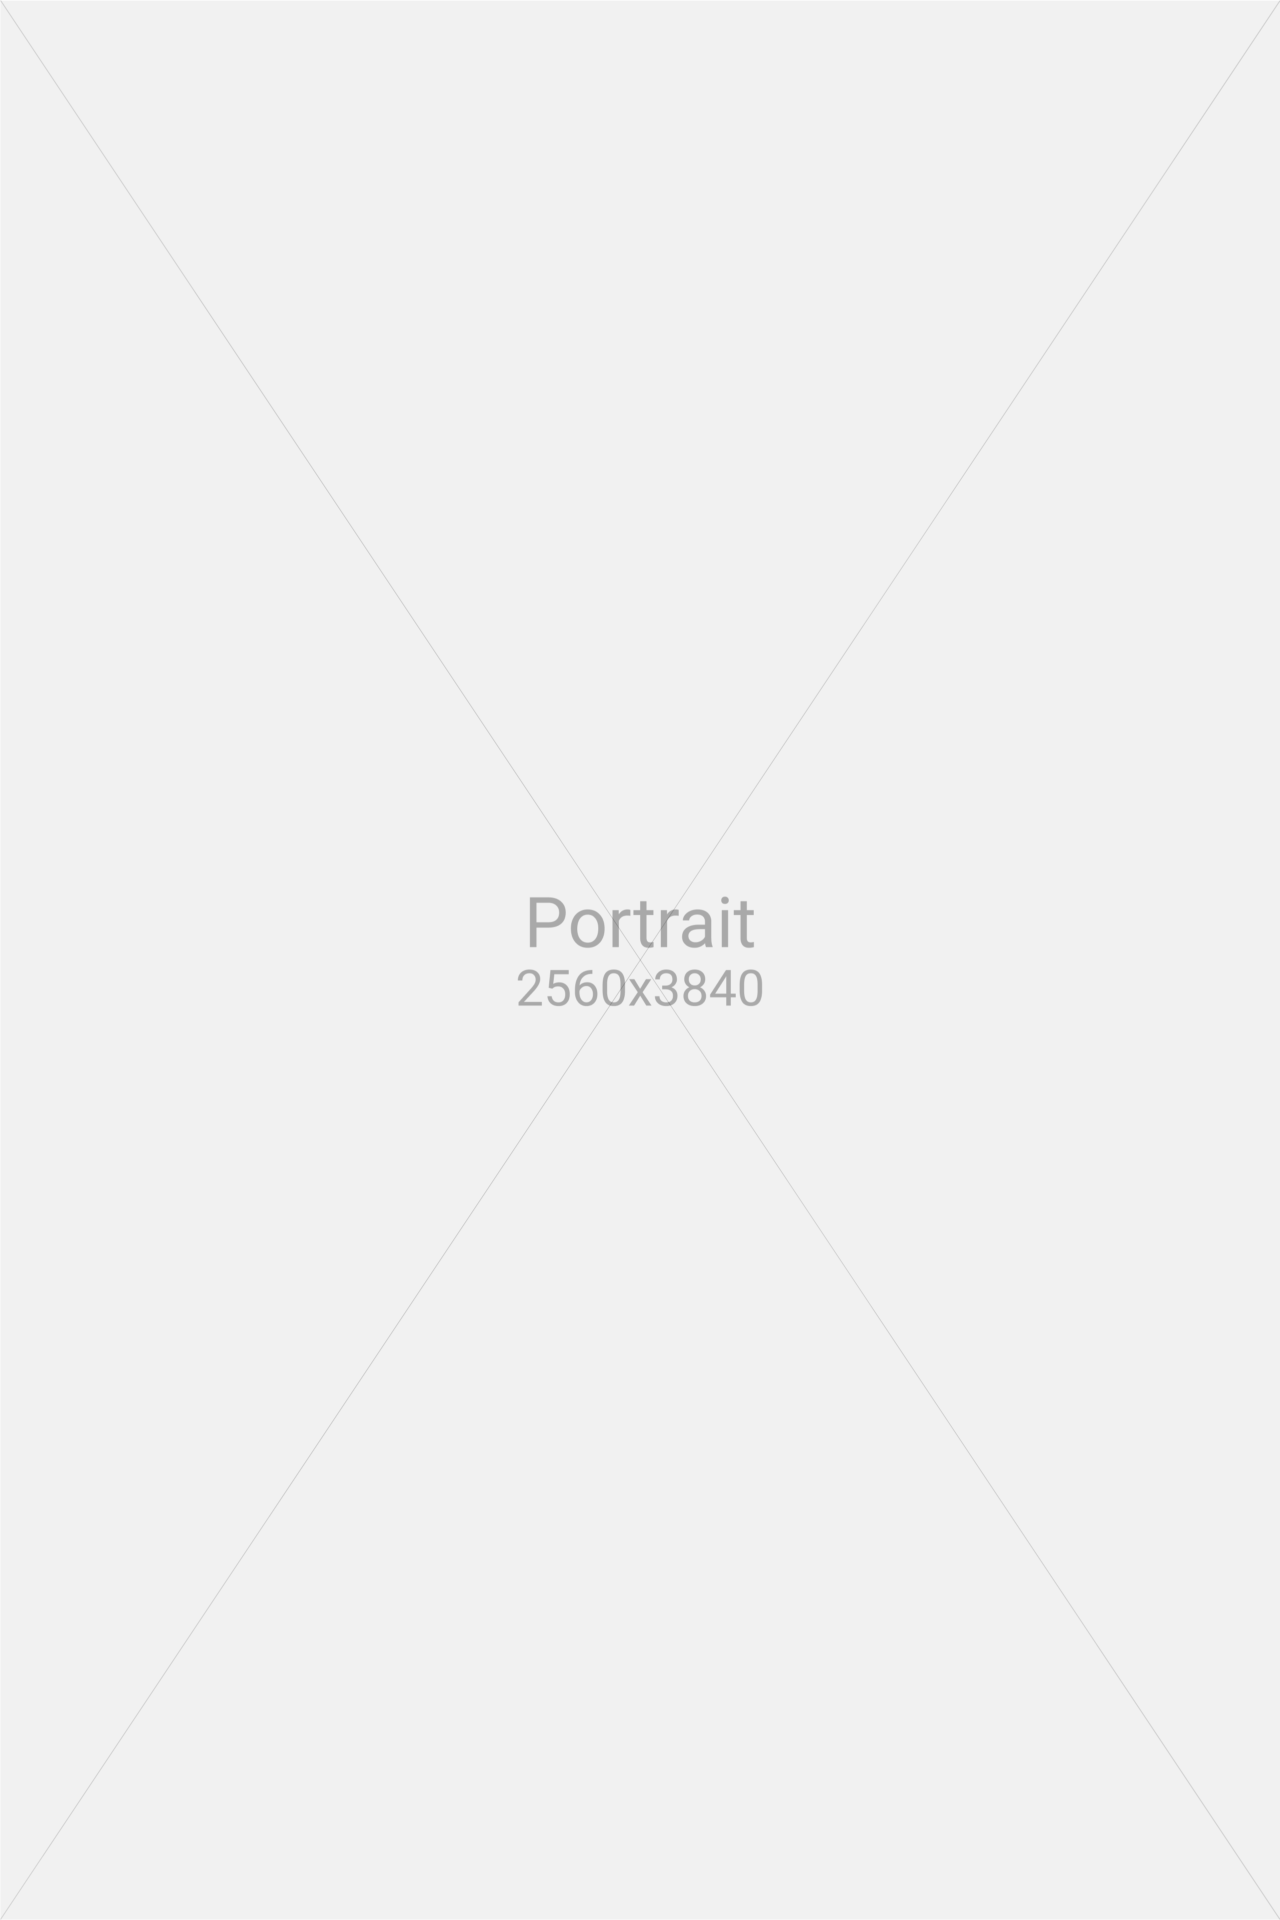 Placeholder Portrait 1280×1920